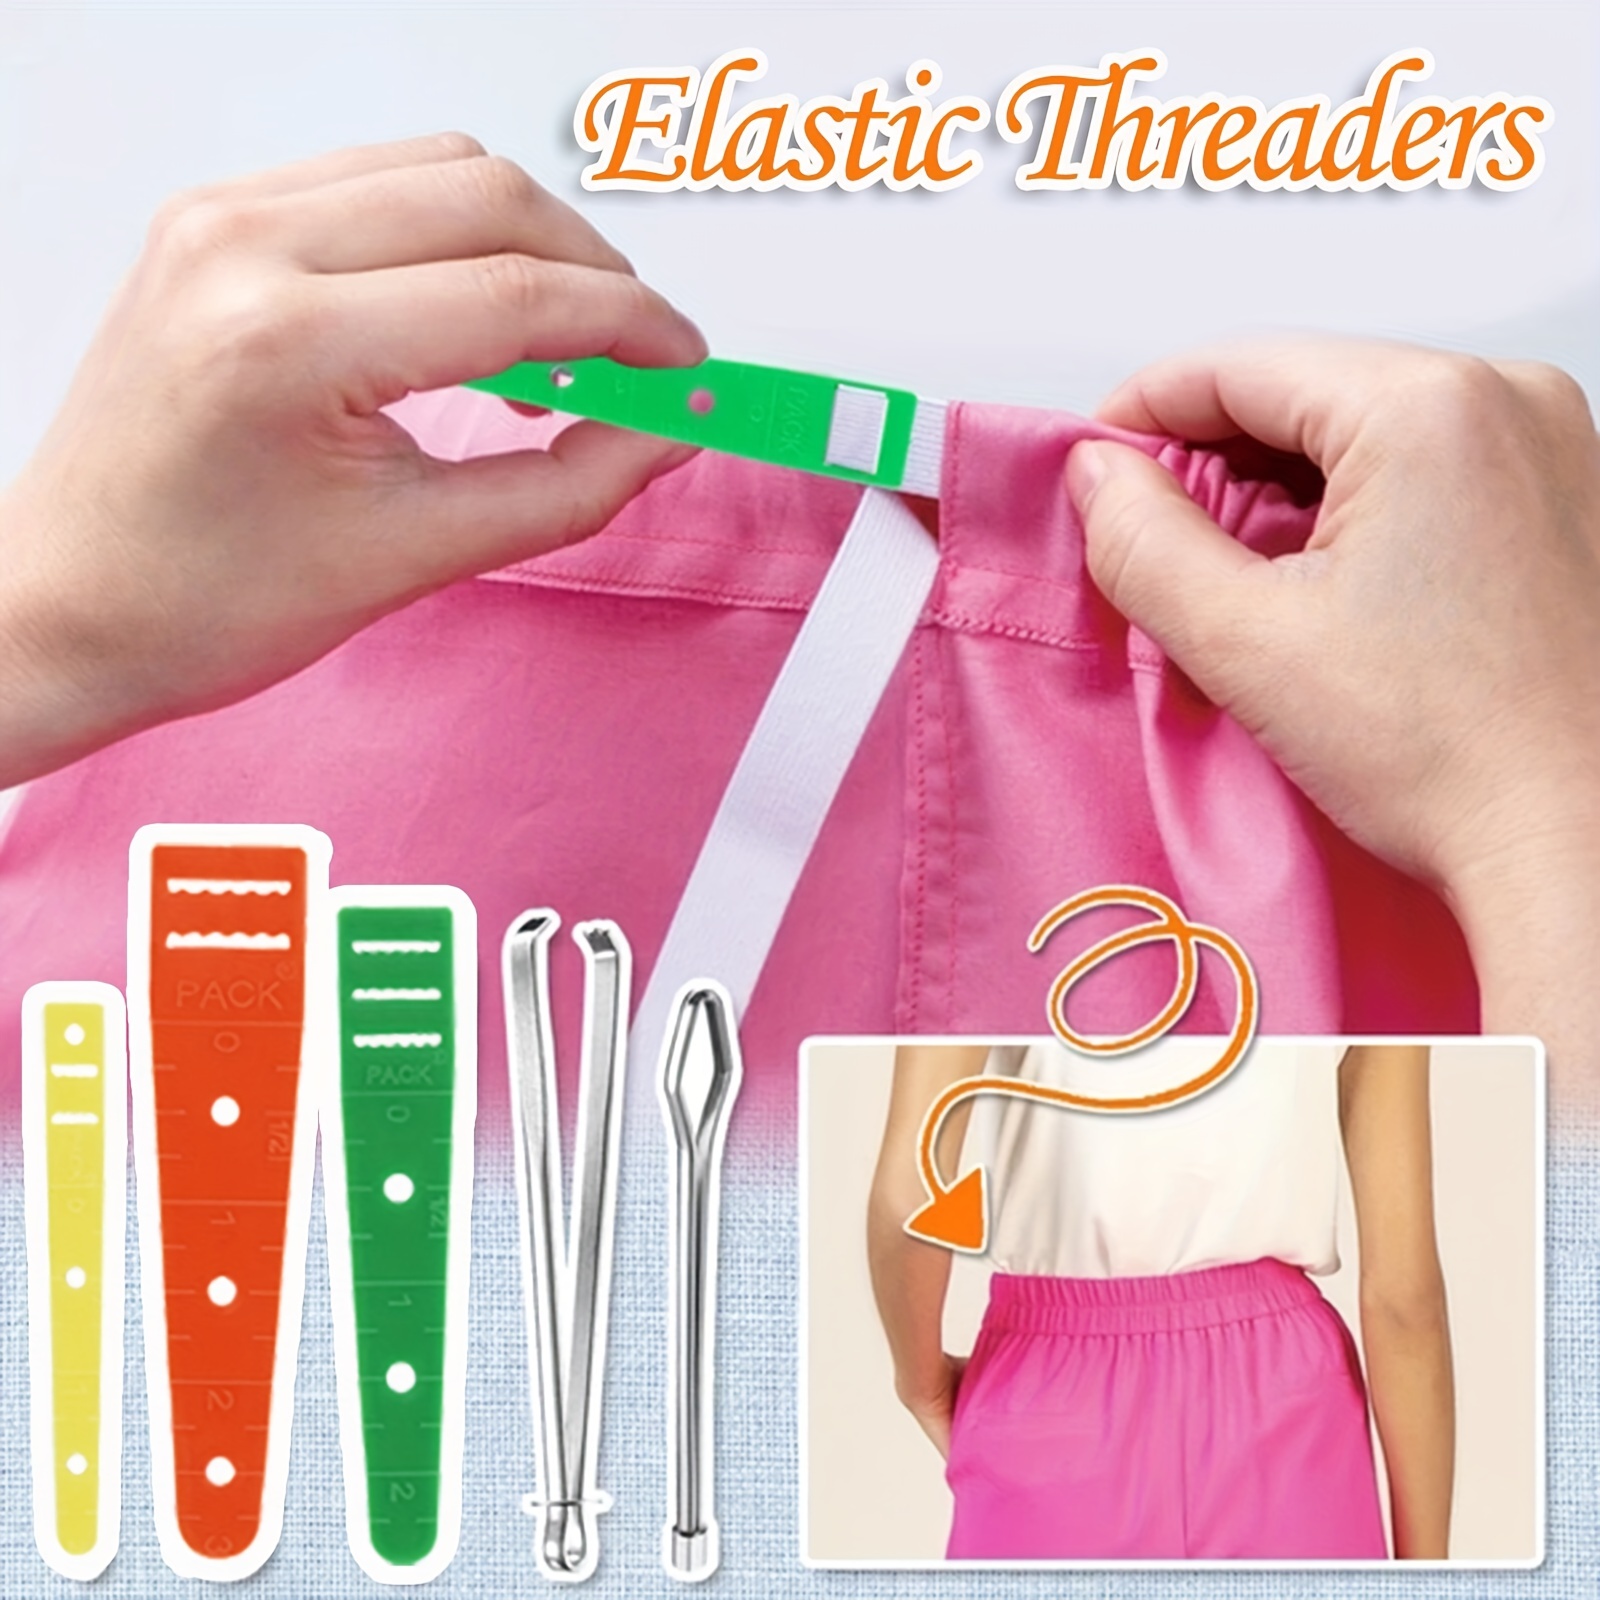 Drawstring Threader Tool Set Sewing Loop Flexible Long Drawstring Threader  Turner Hook Metal Tweezers for Knitting Pants Crafts